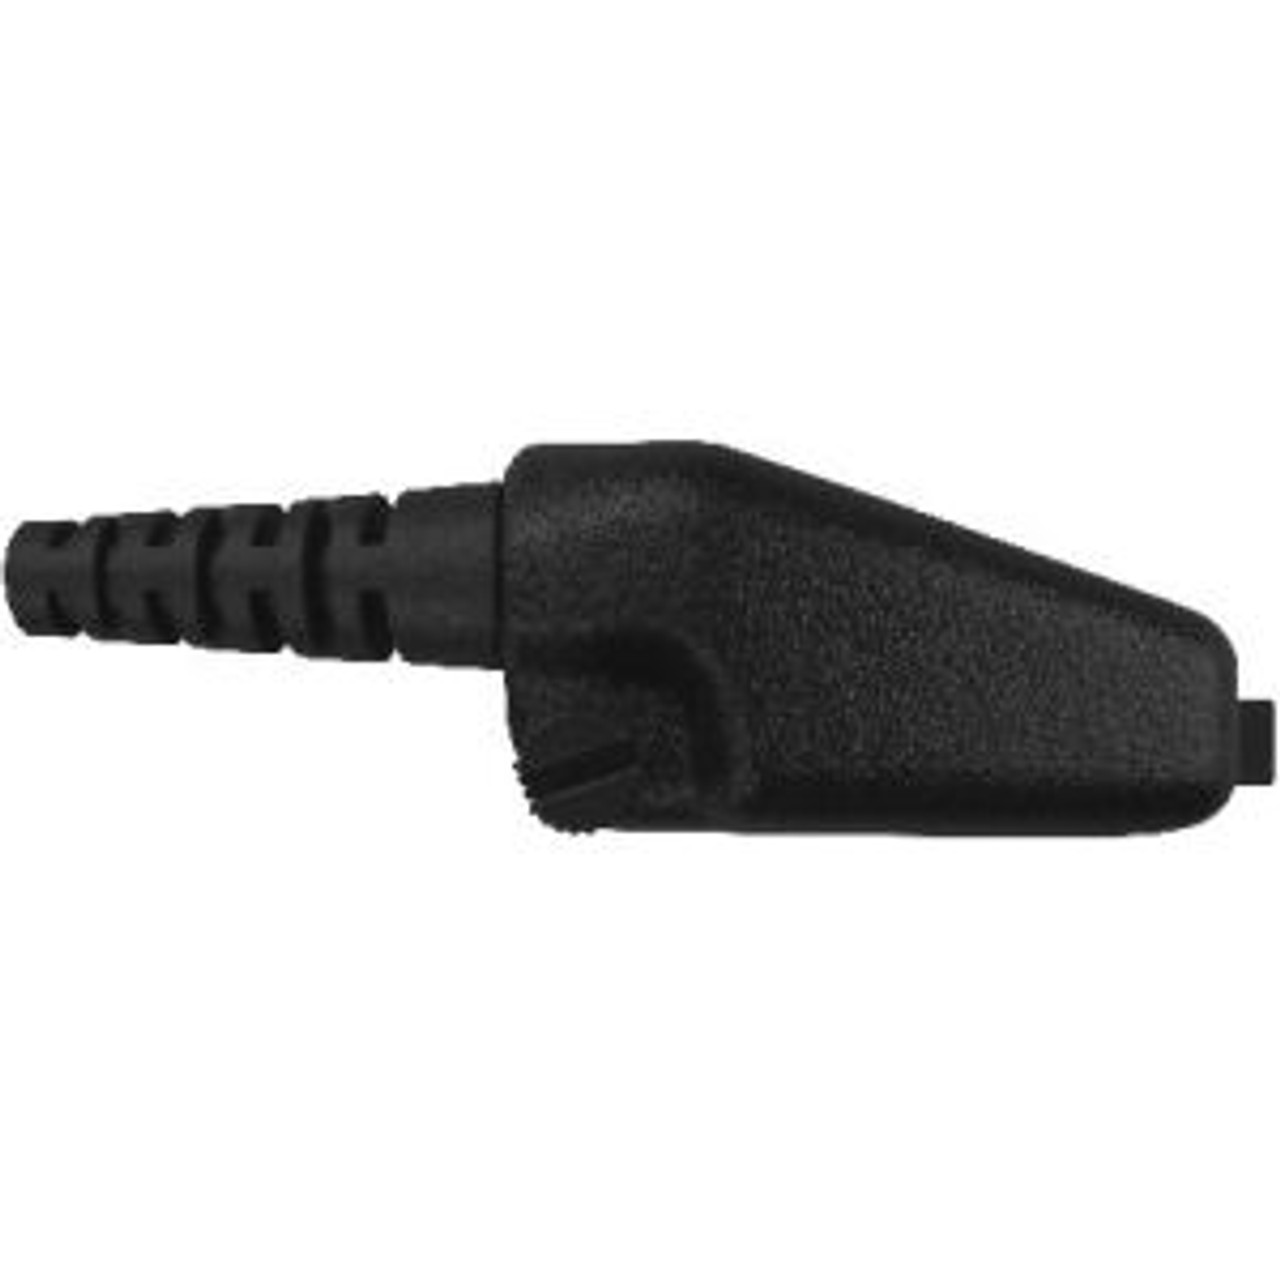 Kenwood NX-5400 Temple Transducer Headset